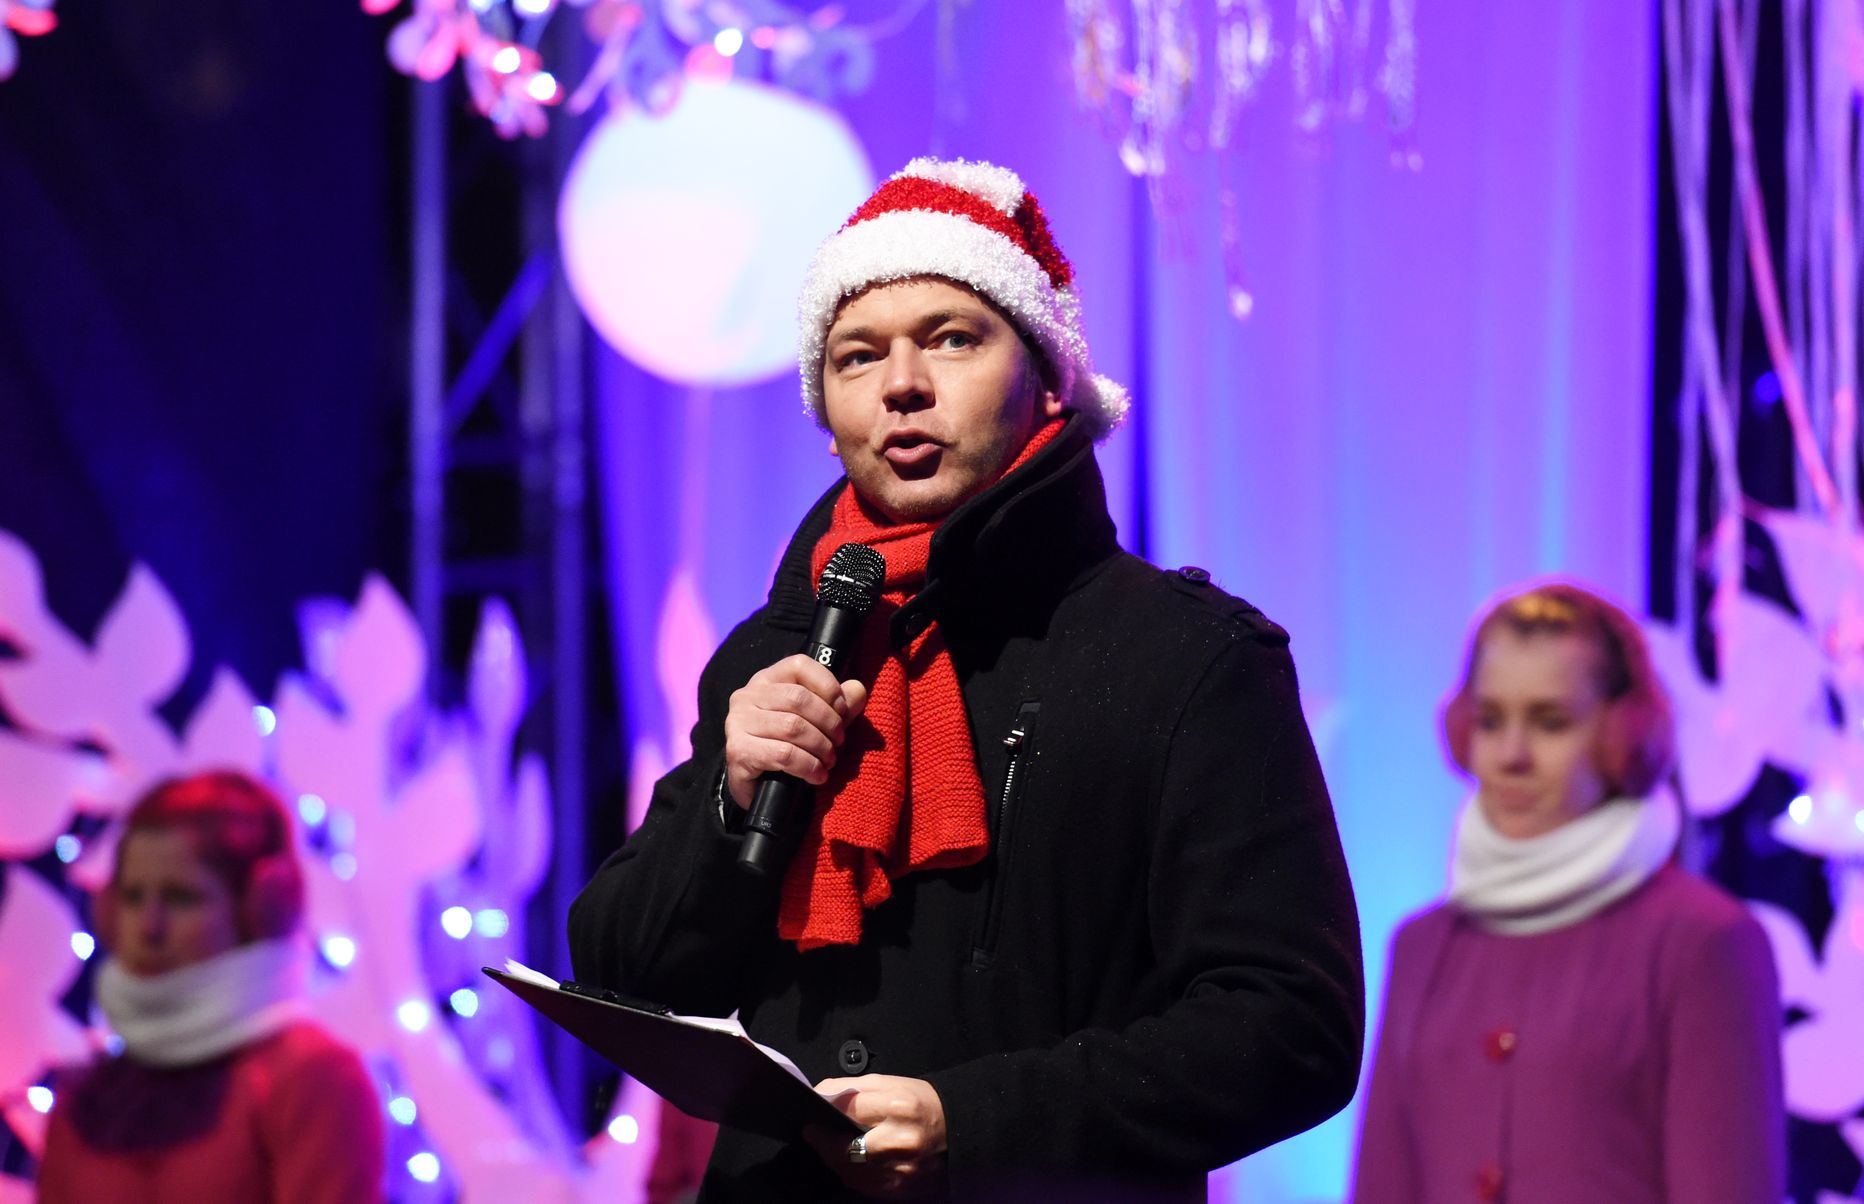 Dziedātājs Lauris Reiniks piedalās Ziemassvētku egles iedegšanas pasākumā Doma laukumā.